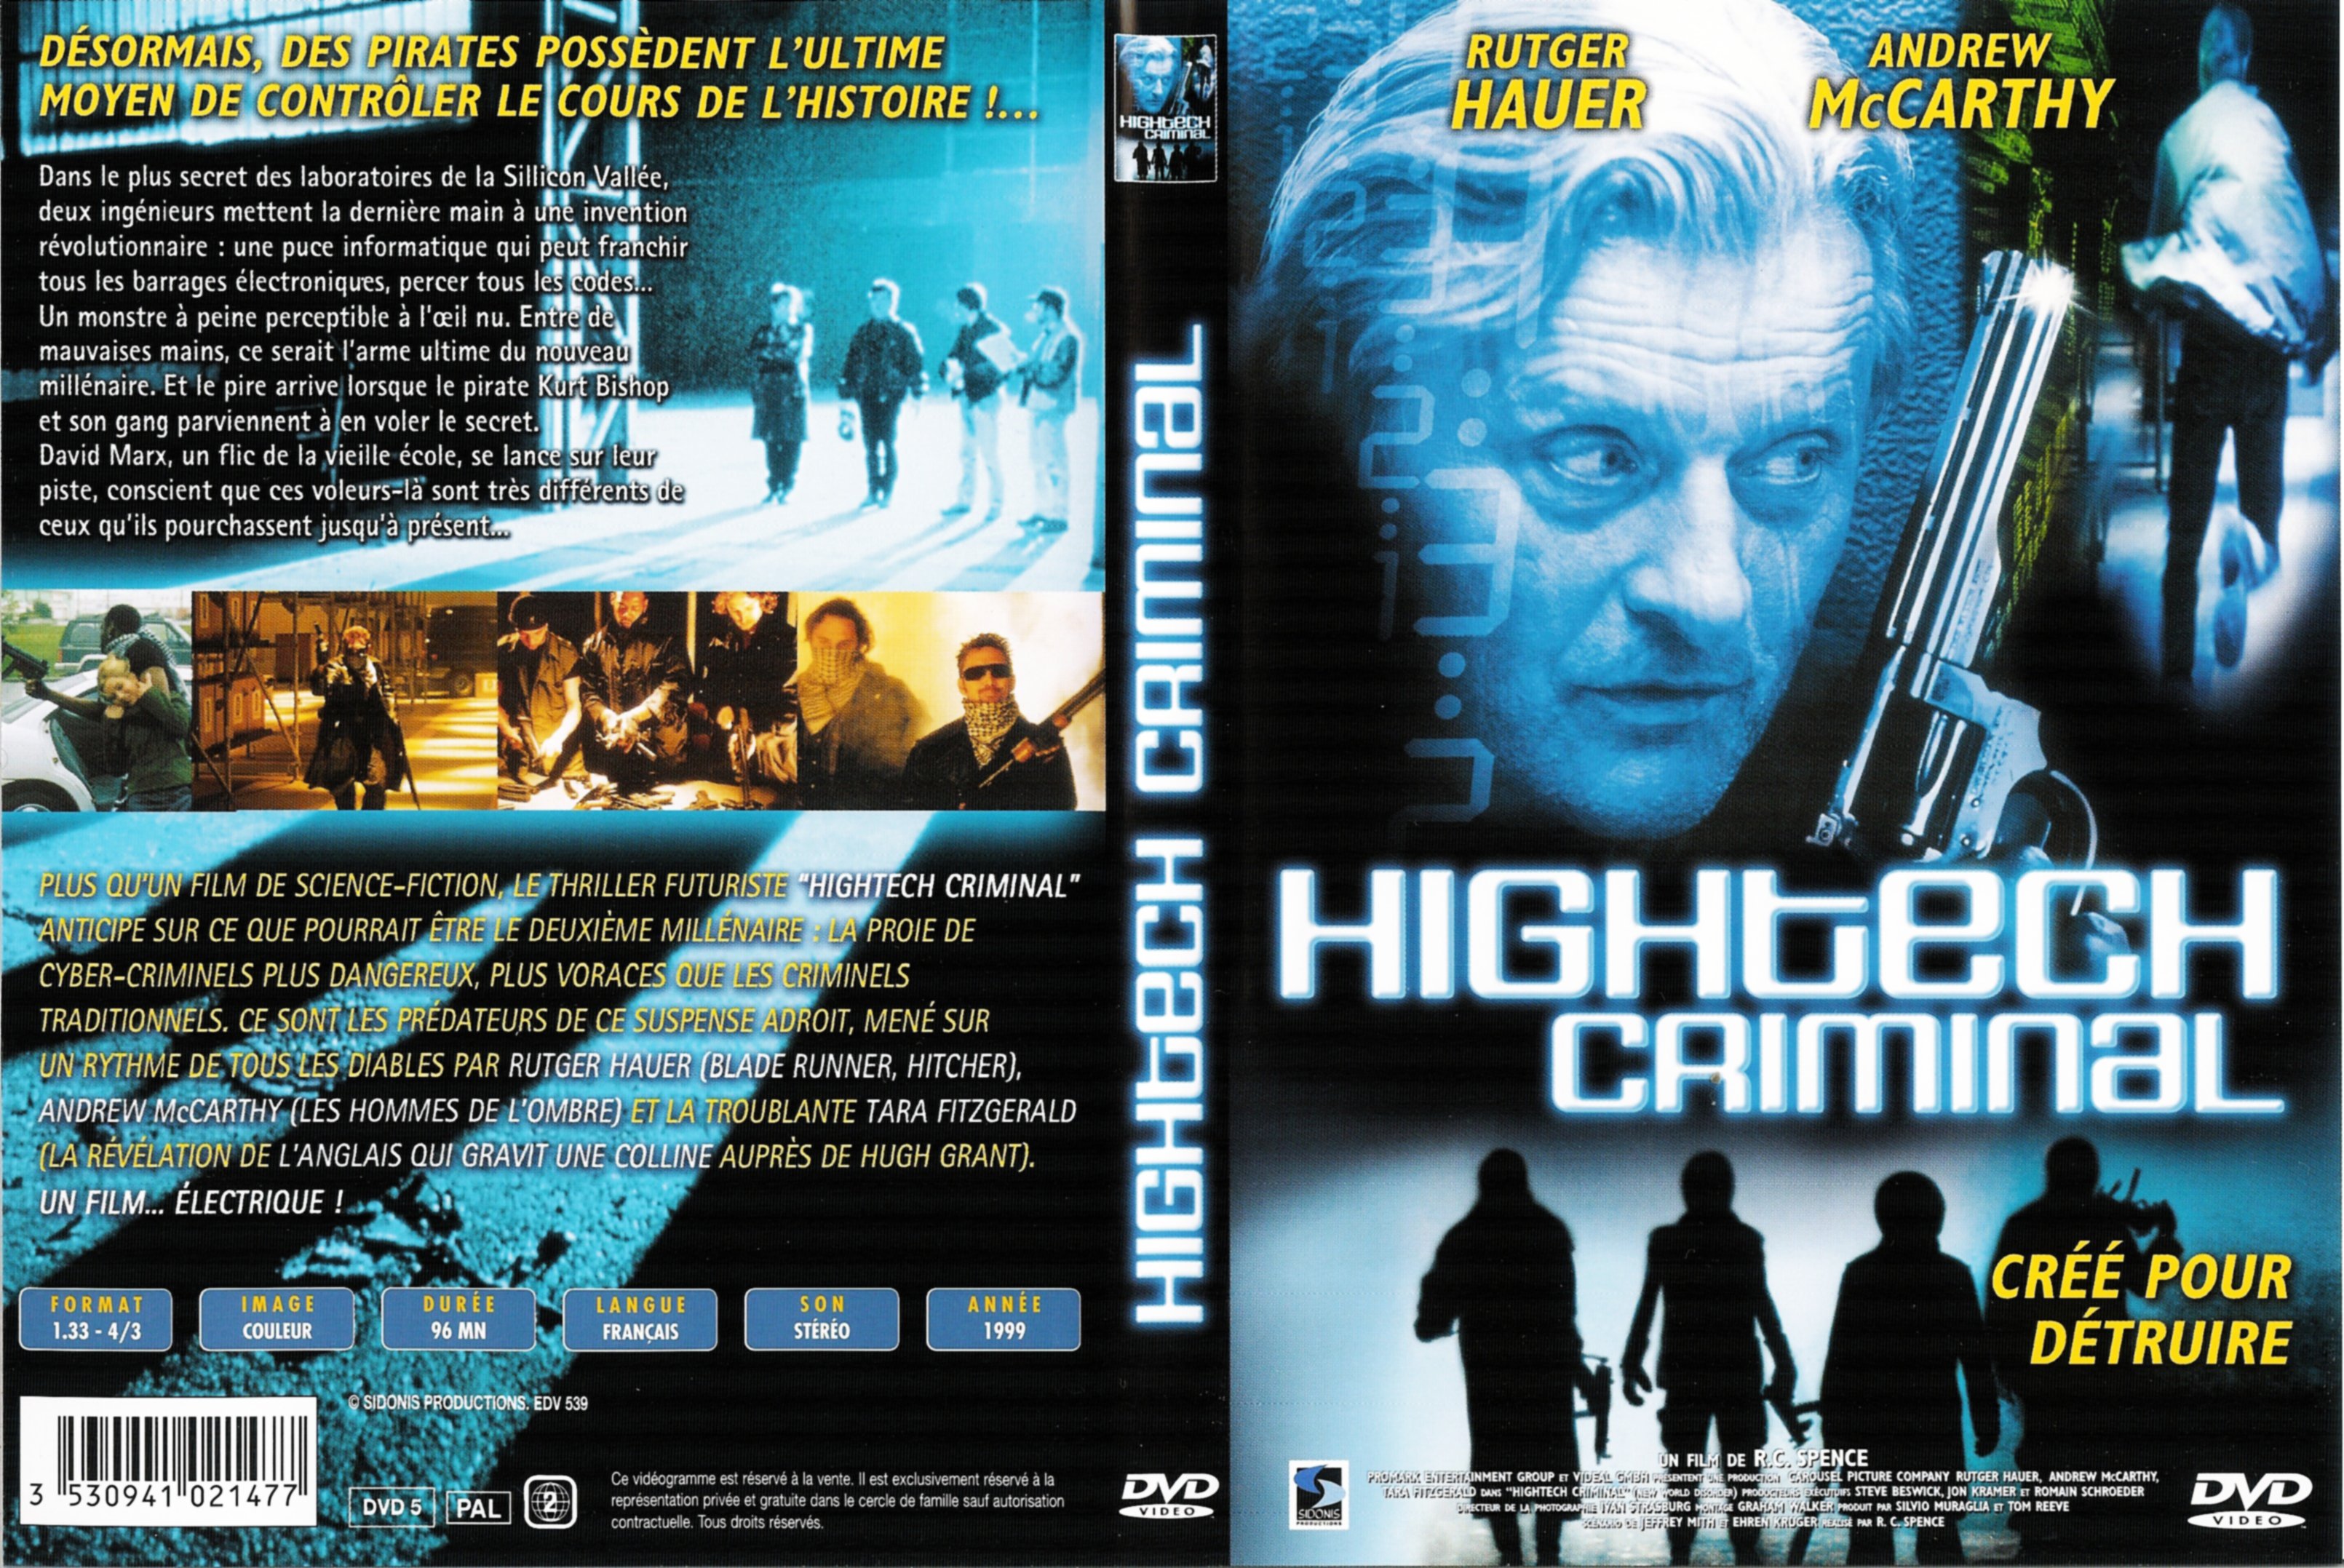 Jaquette DVD Hightech criminal